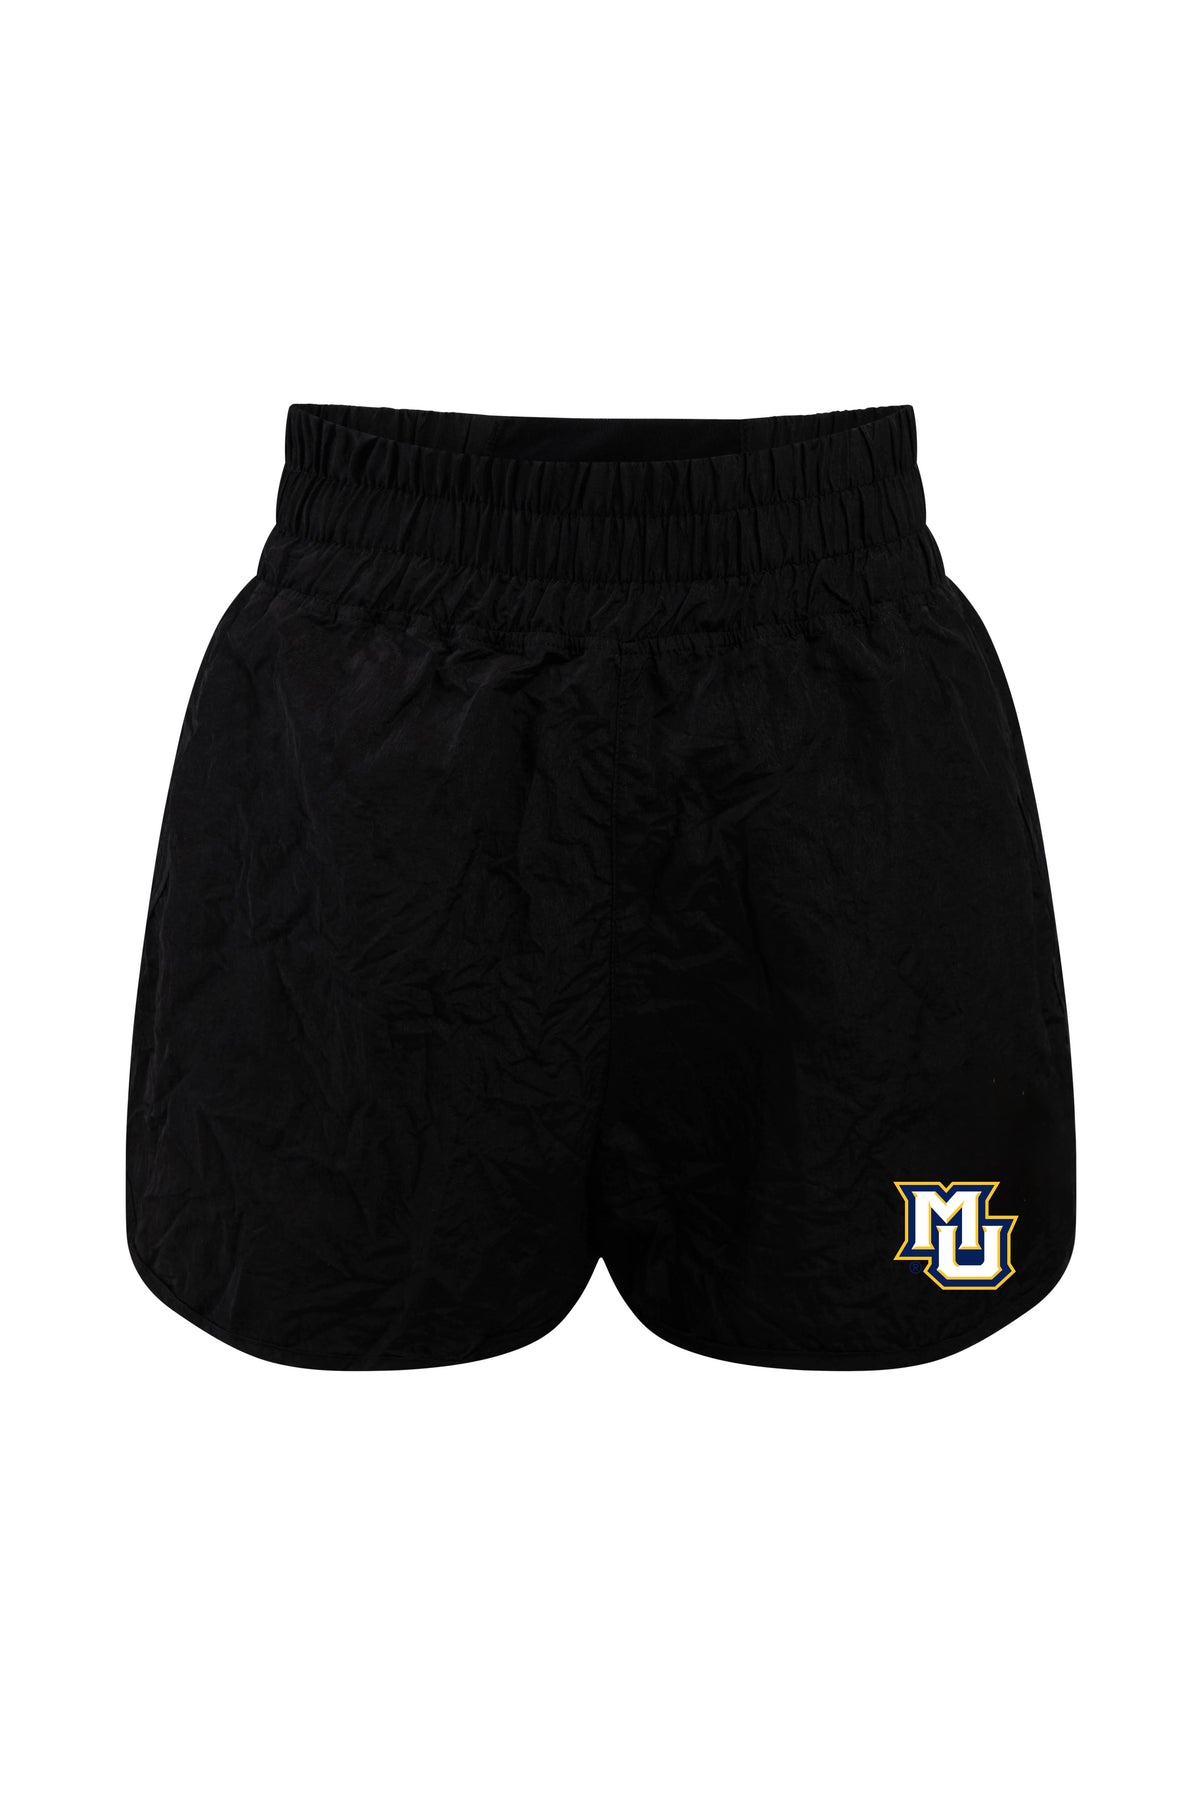 Marquette University Boxer Short